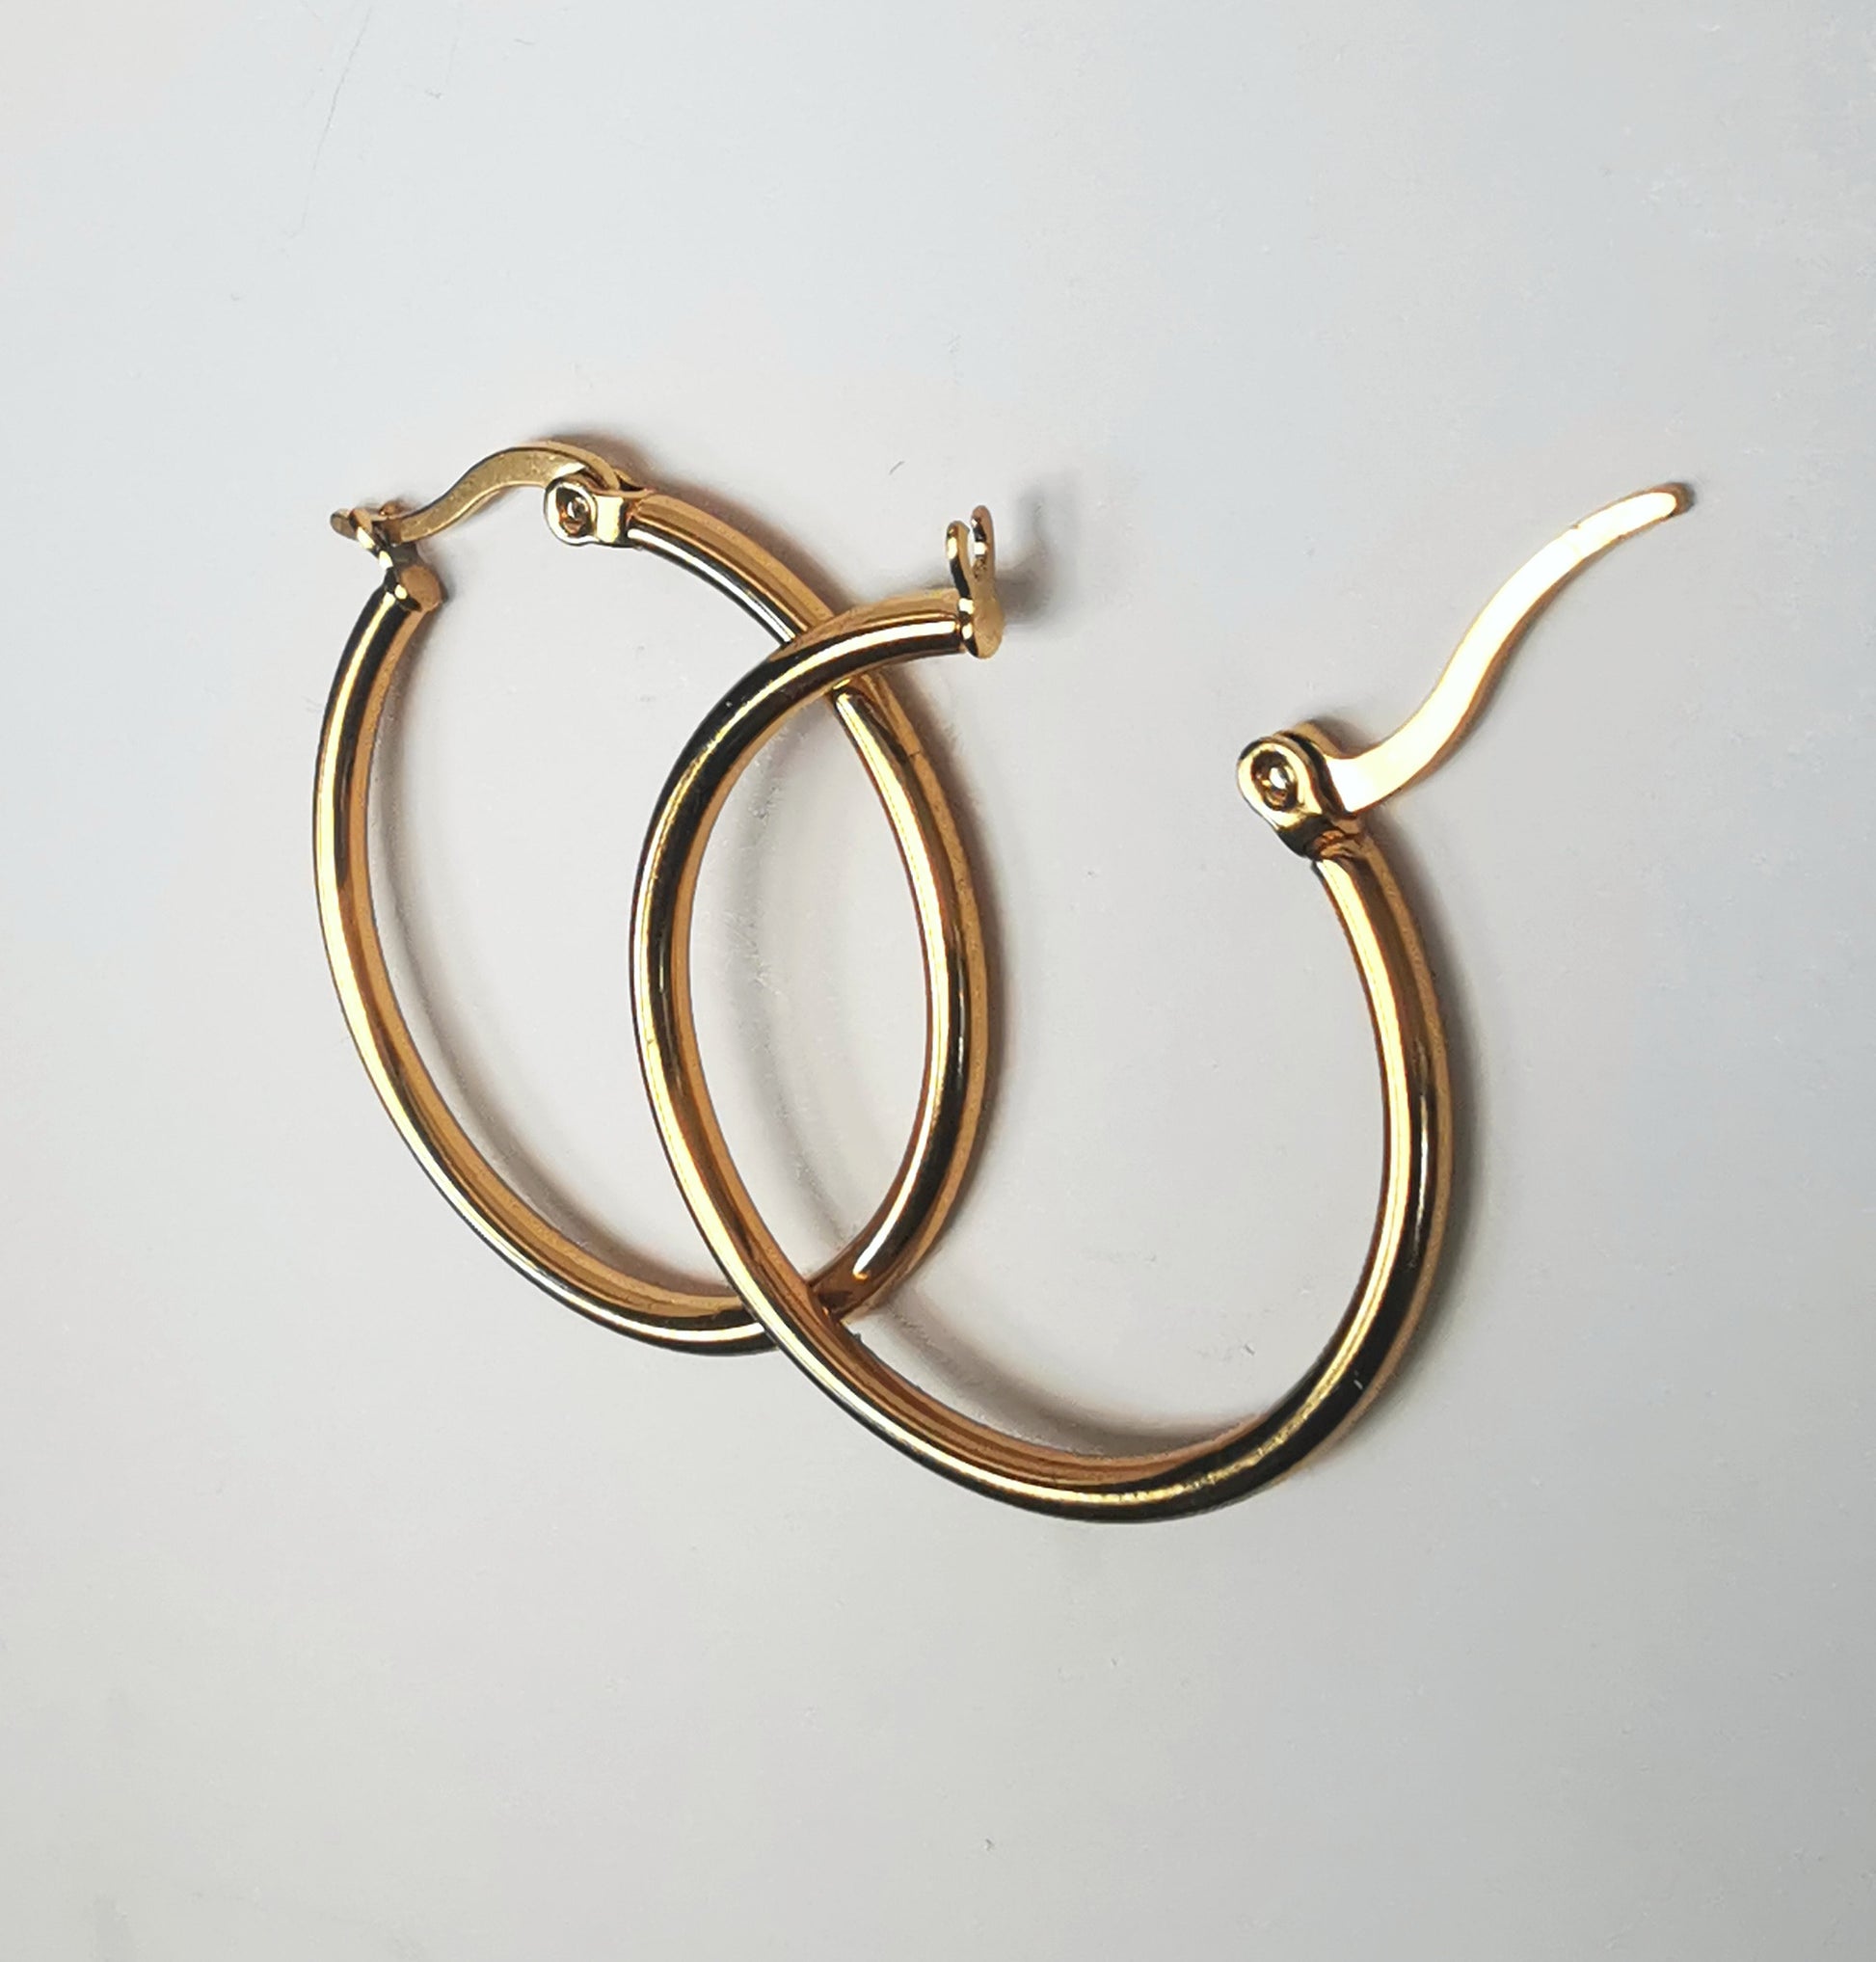 Boucles d'oreilles créoles inox plaqué or, diamètre 30mm, fil de 2mm. Présentées posées sur fond blanc, l'une sur l'autre, celle de droite fermoir ouvert. Vue depuis la droite.